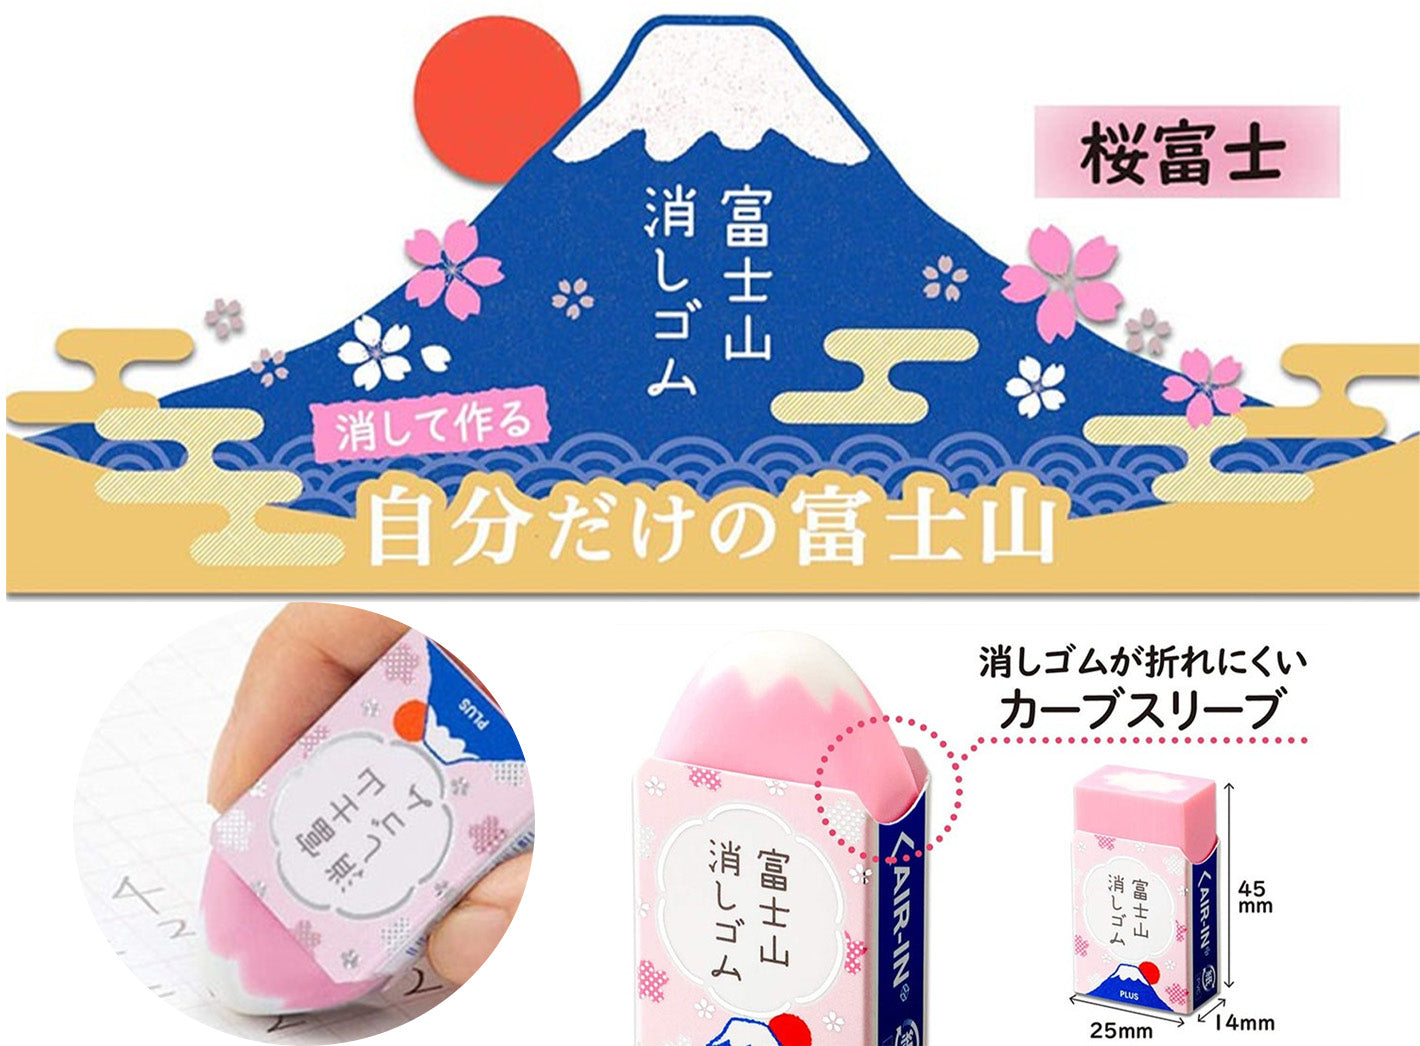 Mount Fuji Eraser (Set of 2)